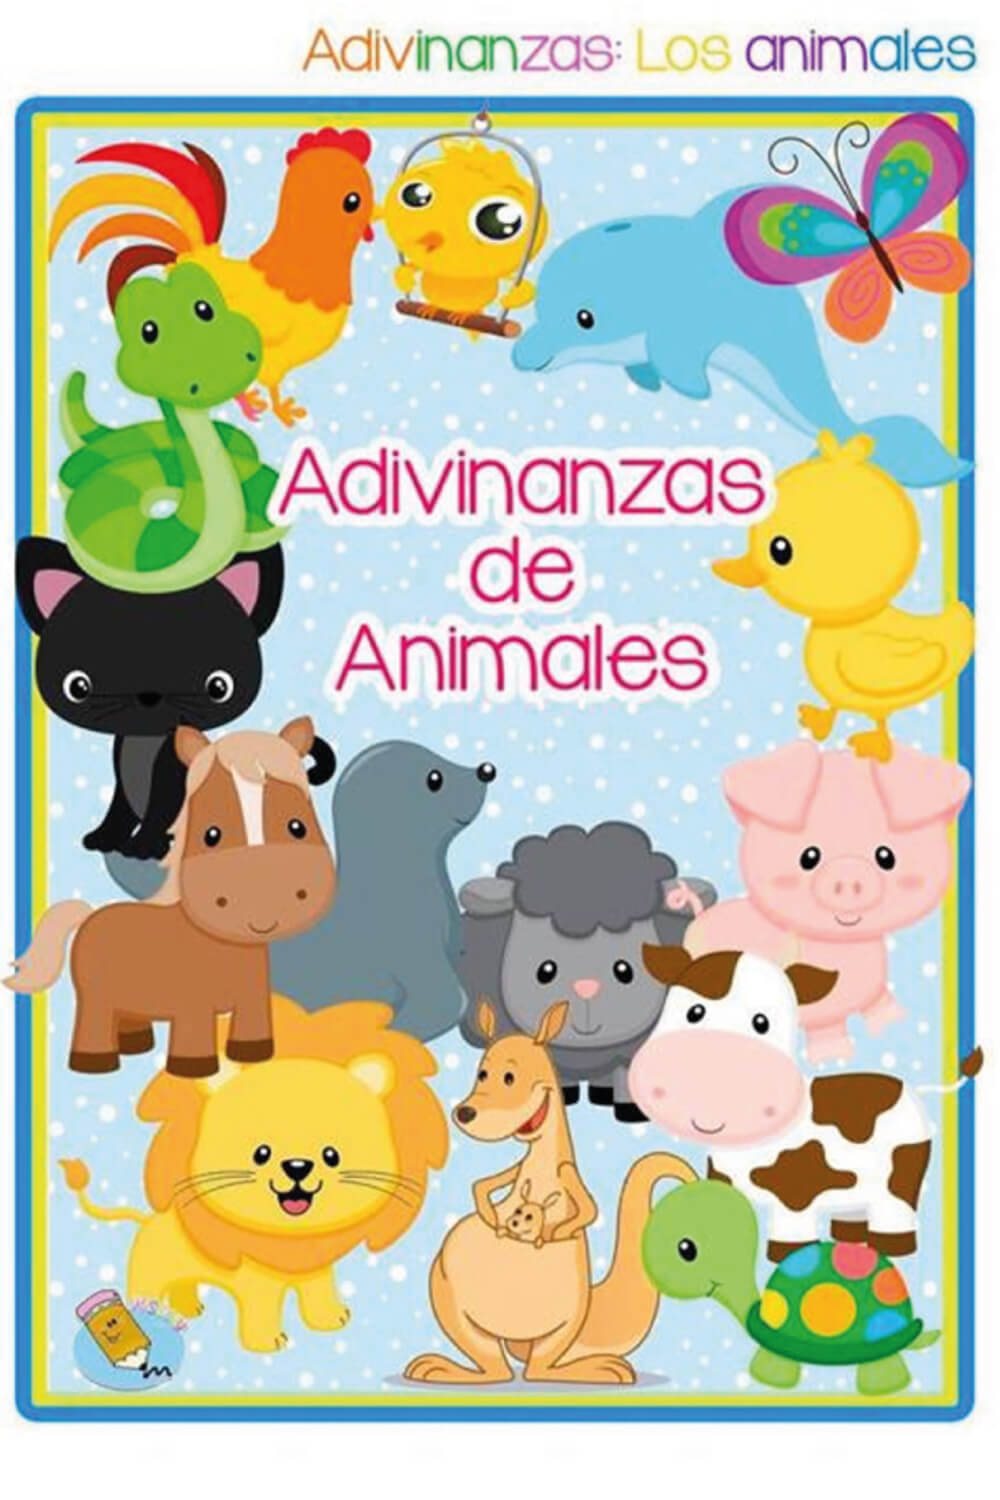 Adivinanzas de animales para niños | Materiales Educativos para Maestras